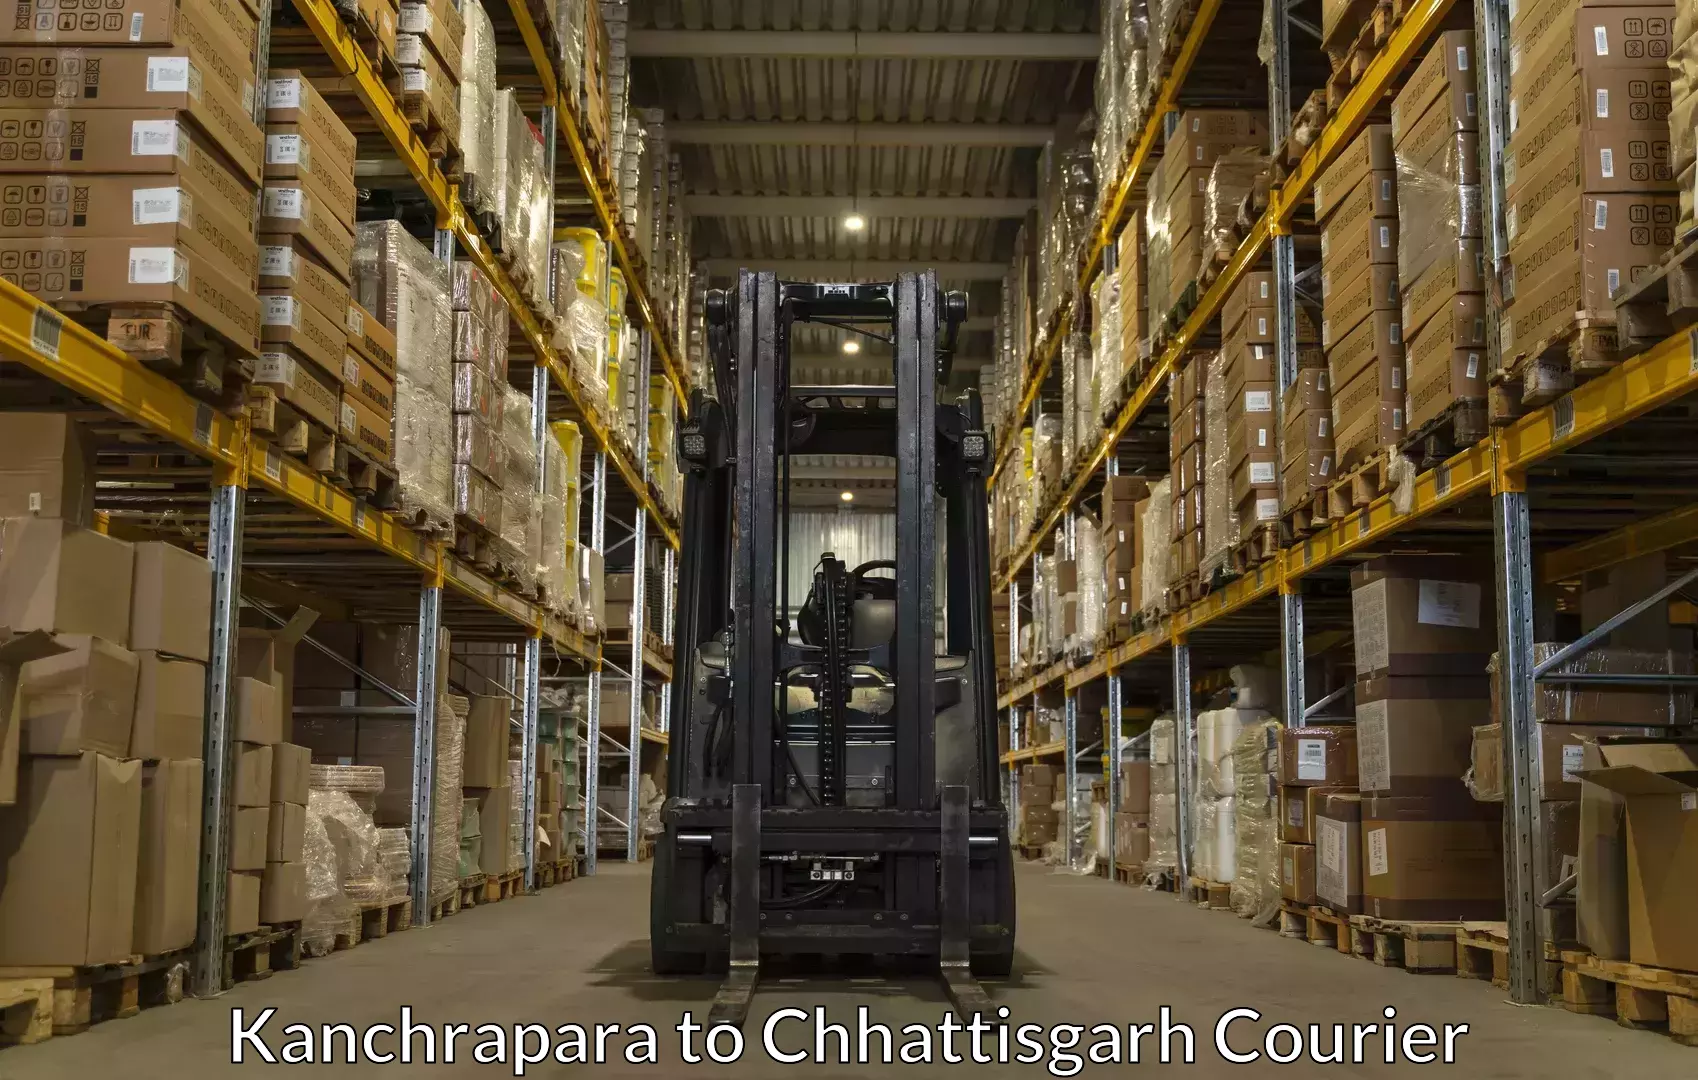 Luggage transport company Kanchrapara to Janjgir Champa